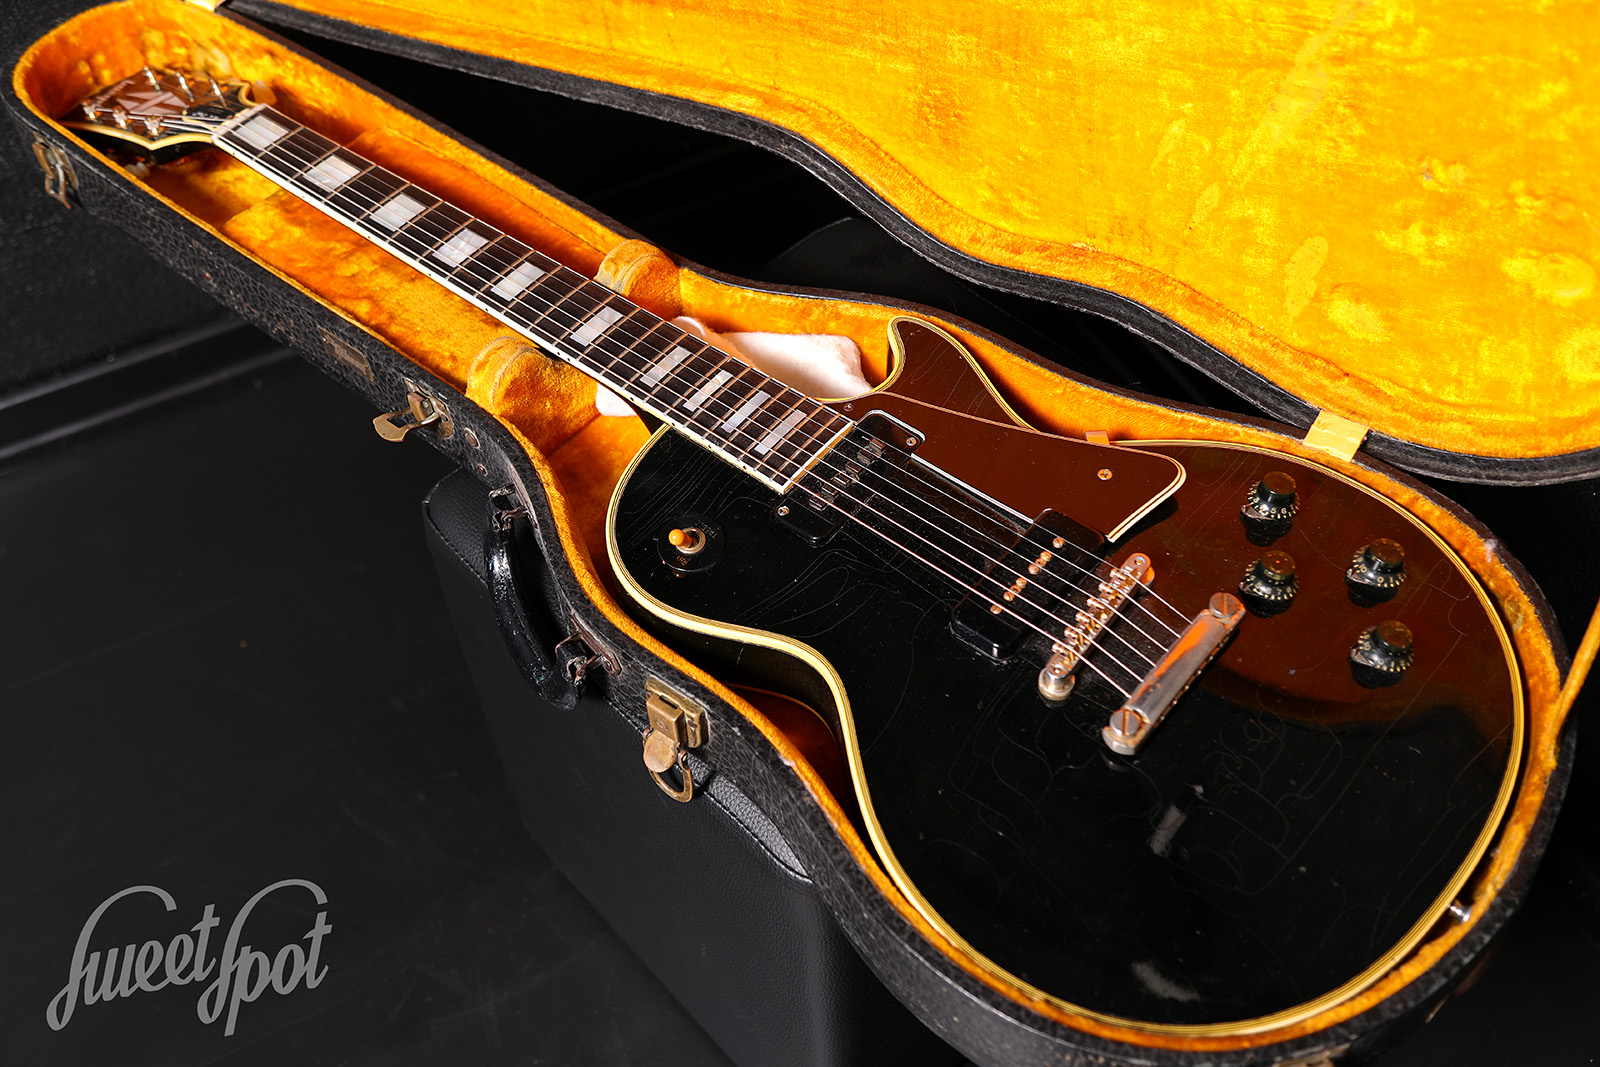 1956 Les Paul Custom Ebony - Sweetspot Guitars | English